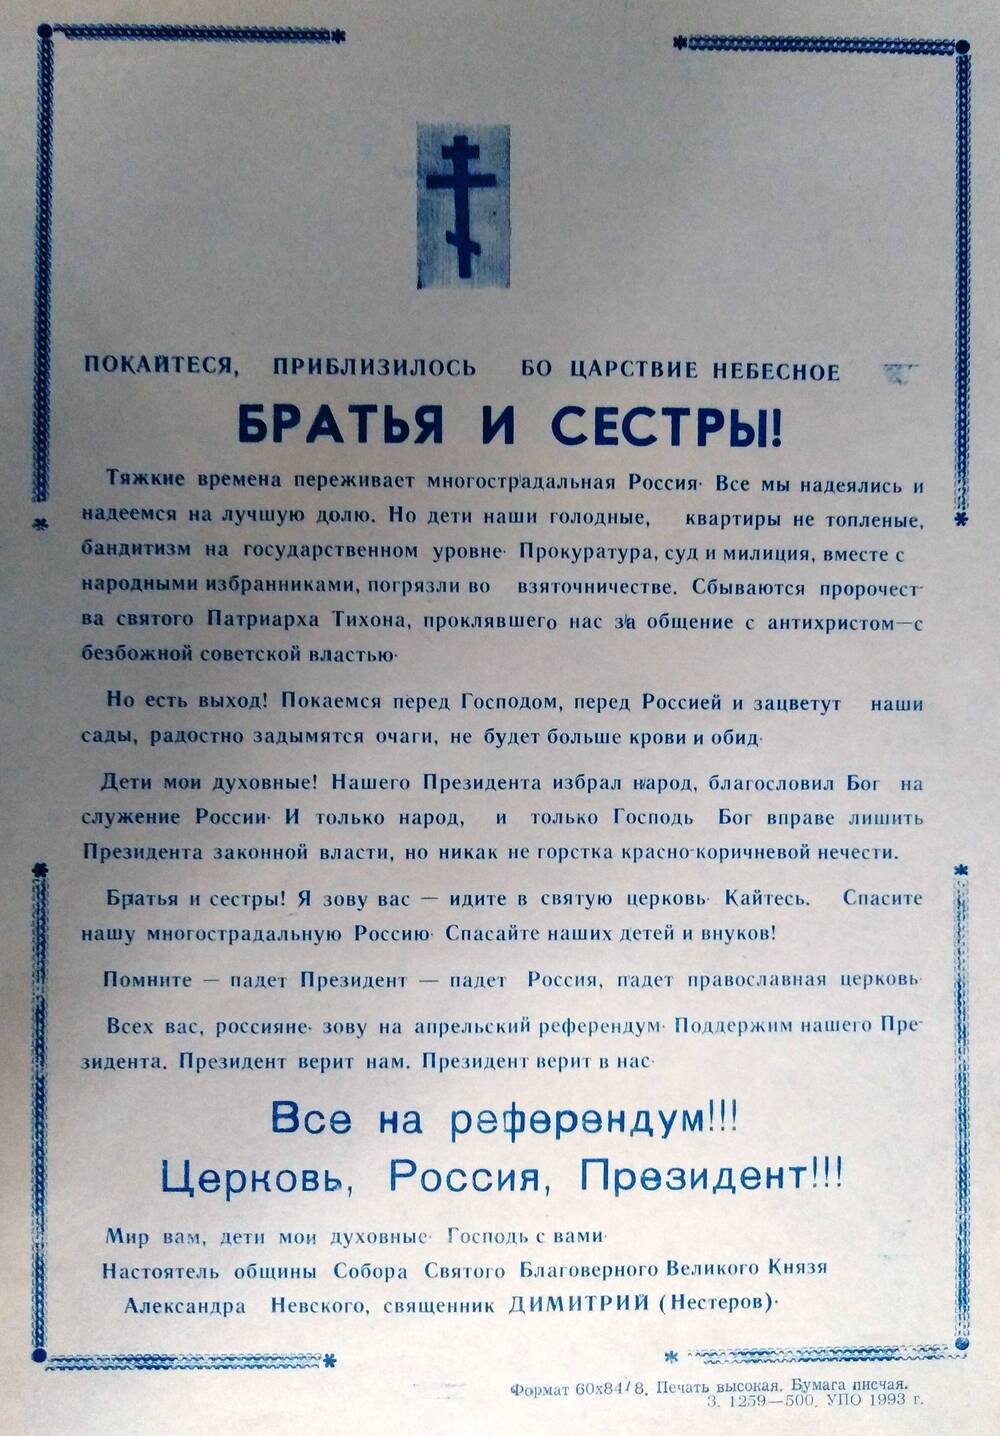 Листовка-обращение священника Димитрия перед референдумом 25 апреля 1993 г.